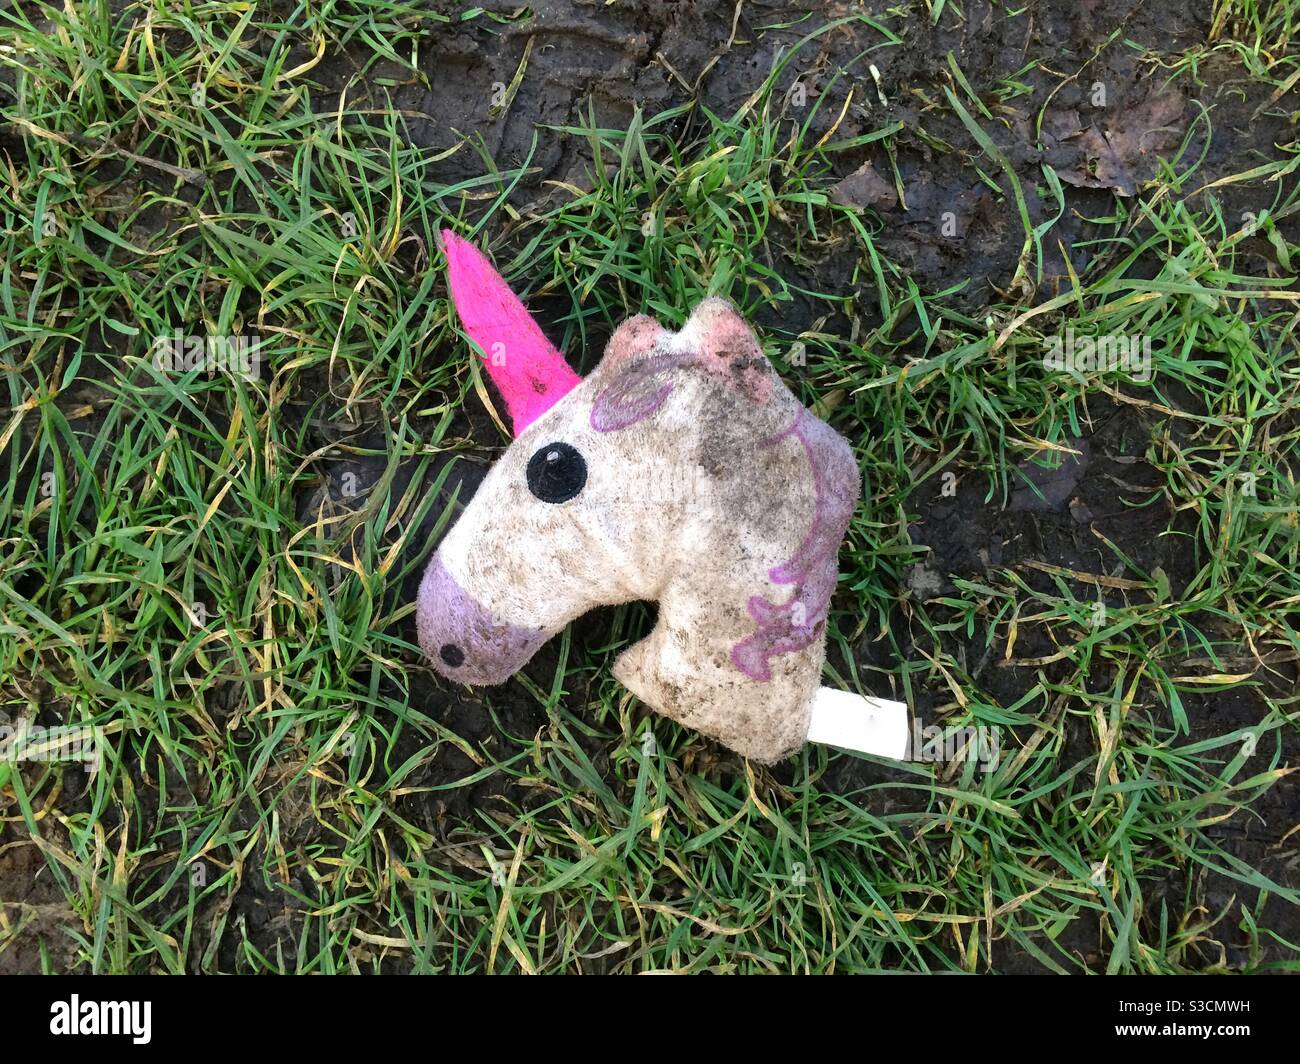 La testa decapitata di un giocattolo farcito unicorno è sporca e abbandonato su erba bagnata Foto Stock